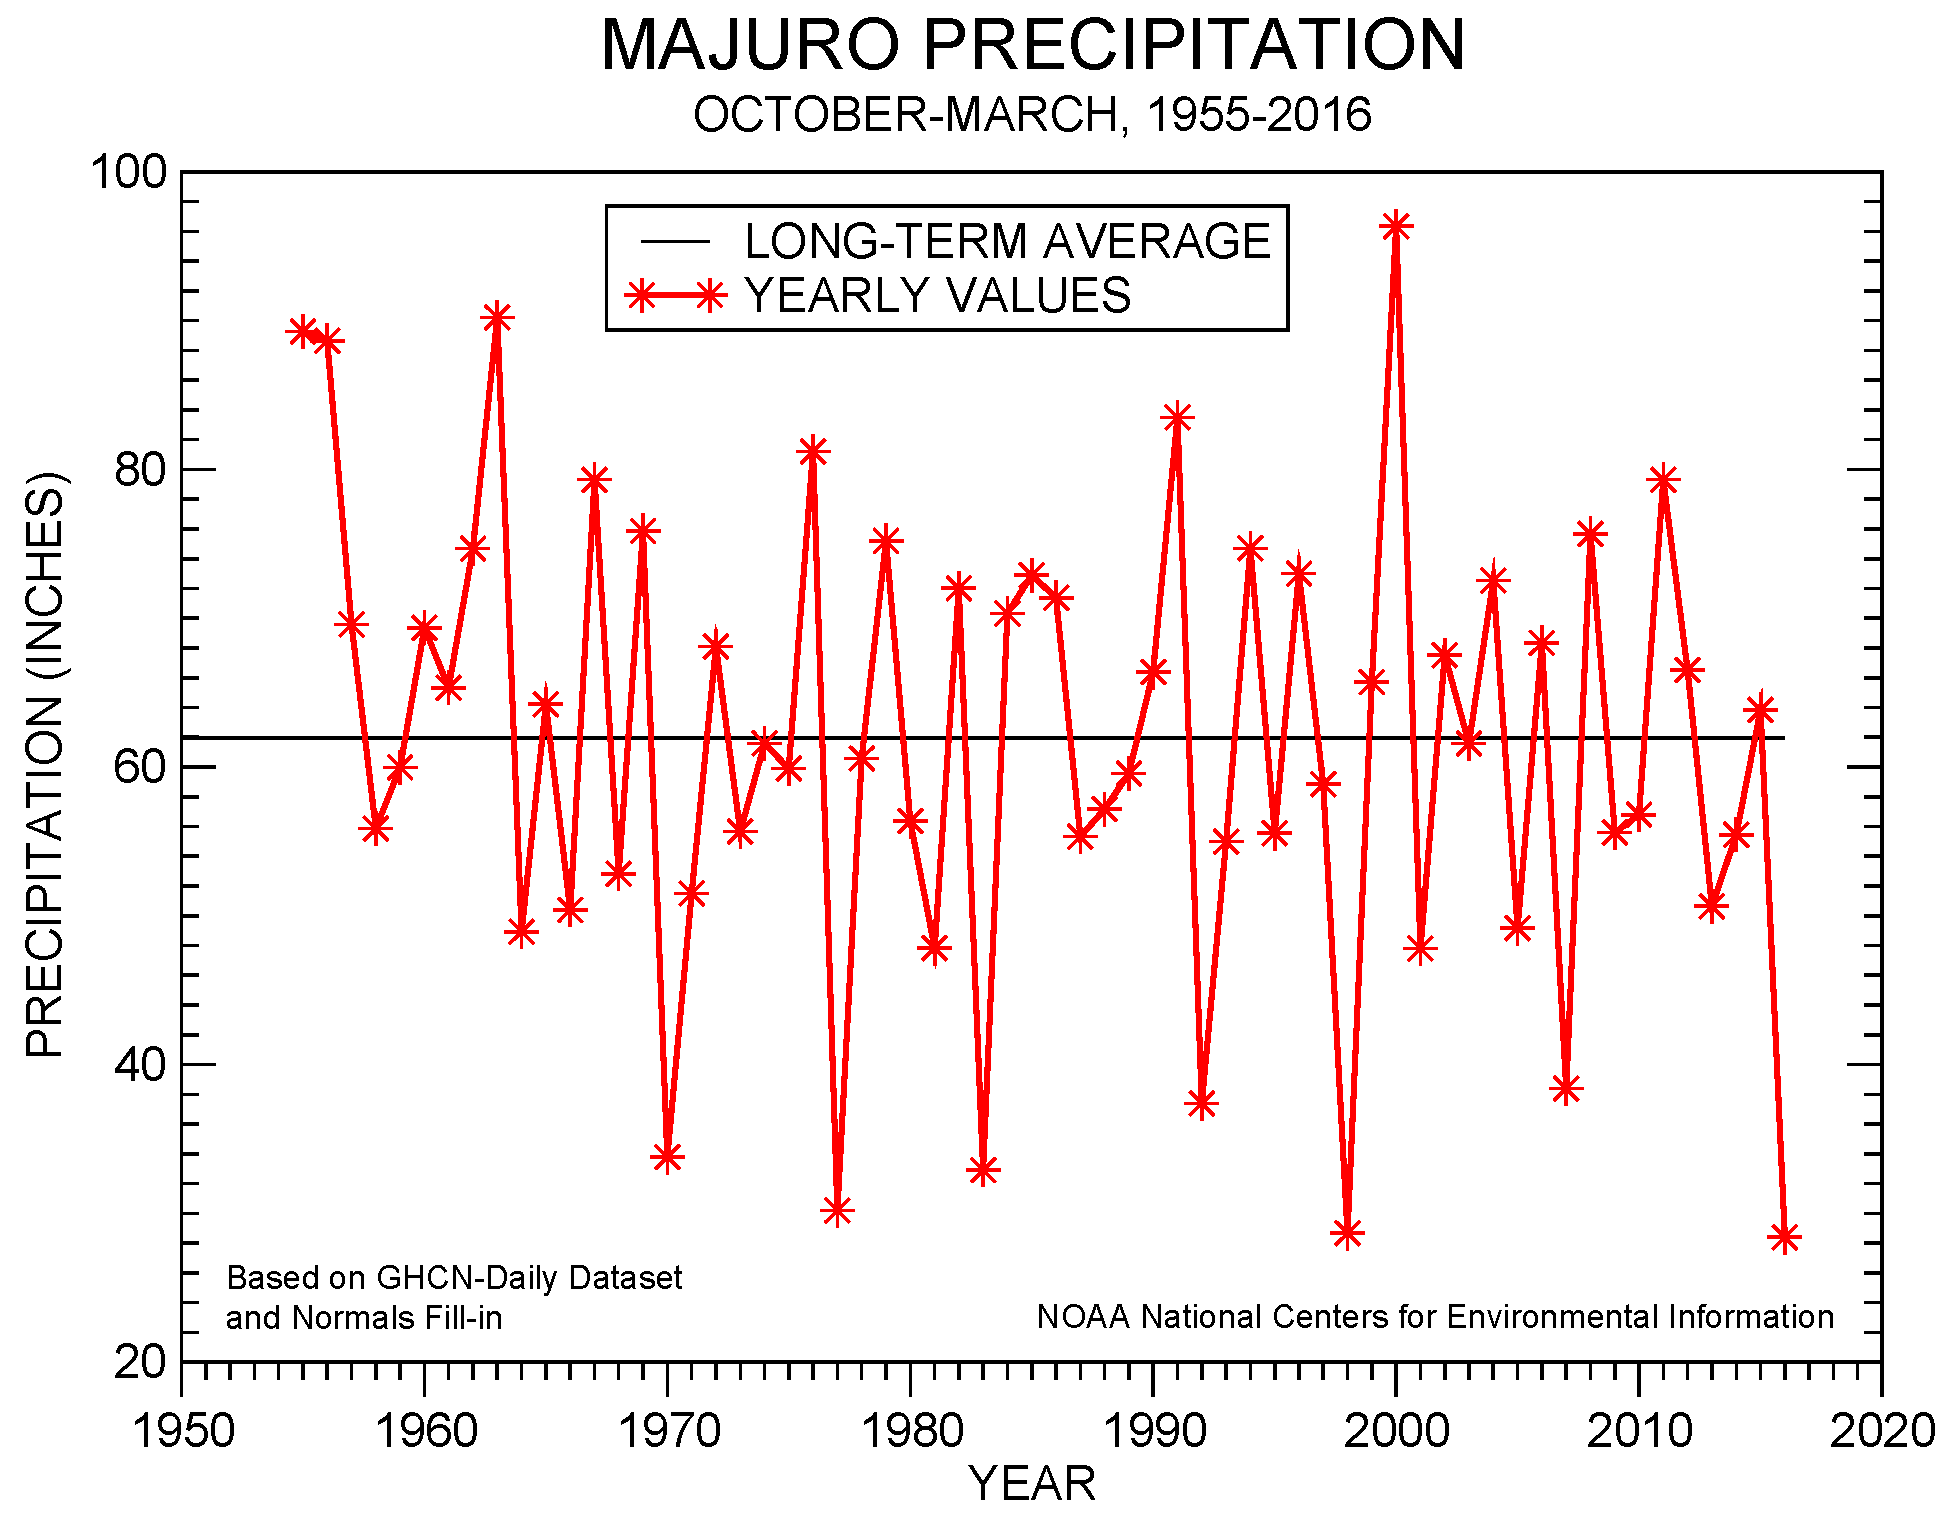 October-March precipitation for Majuro, 1955-2016